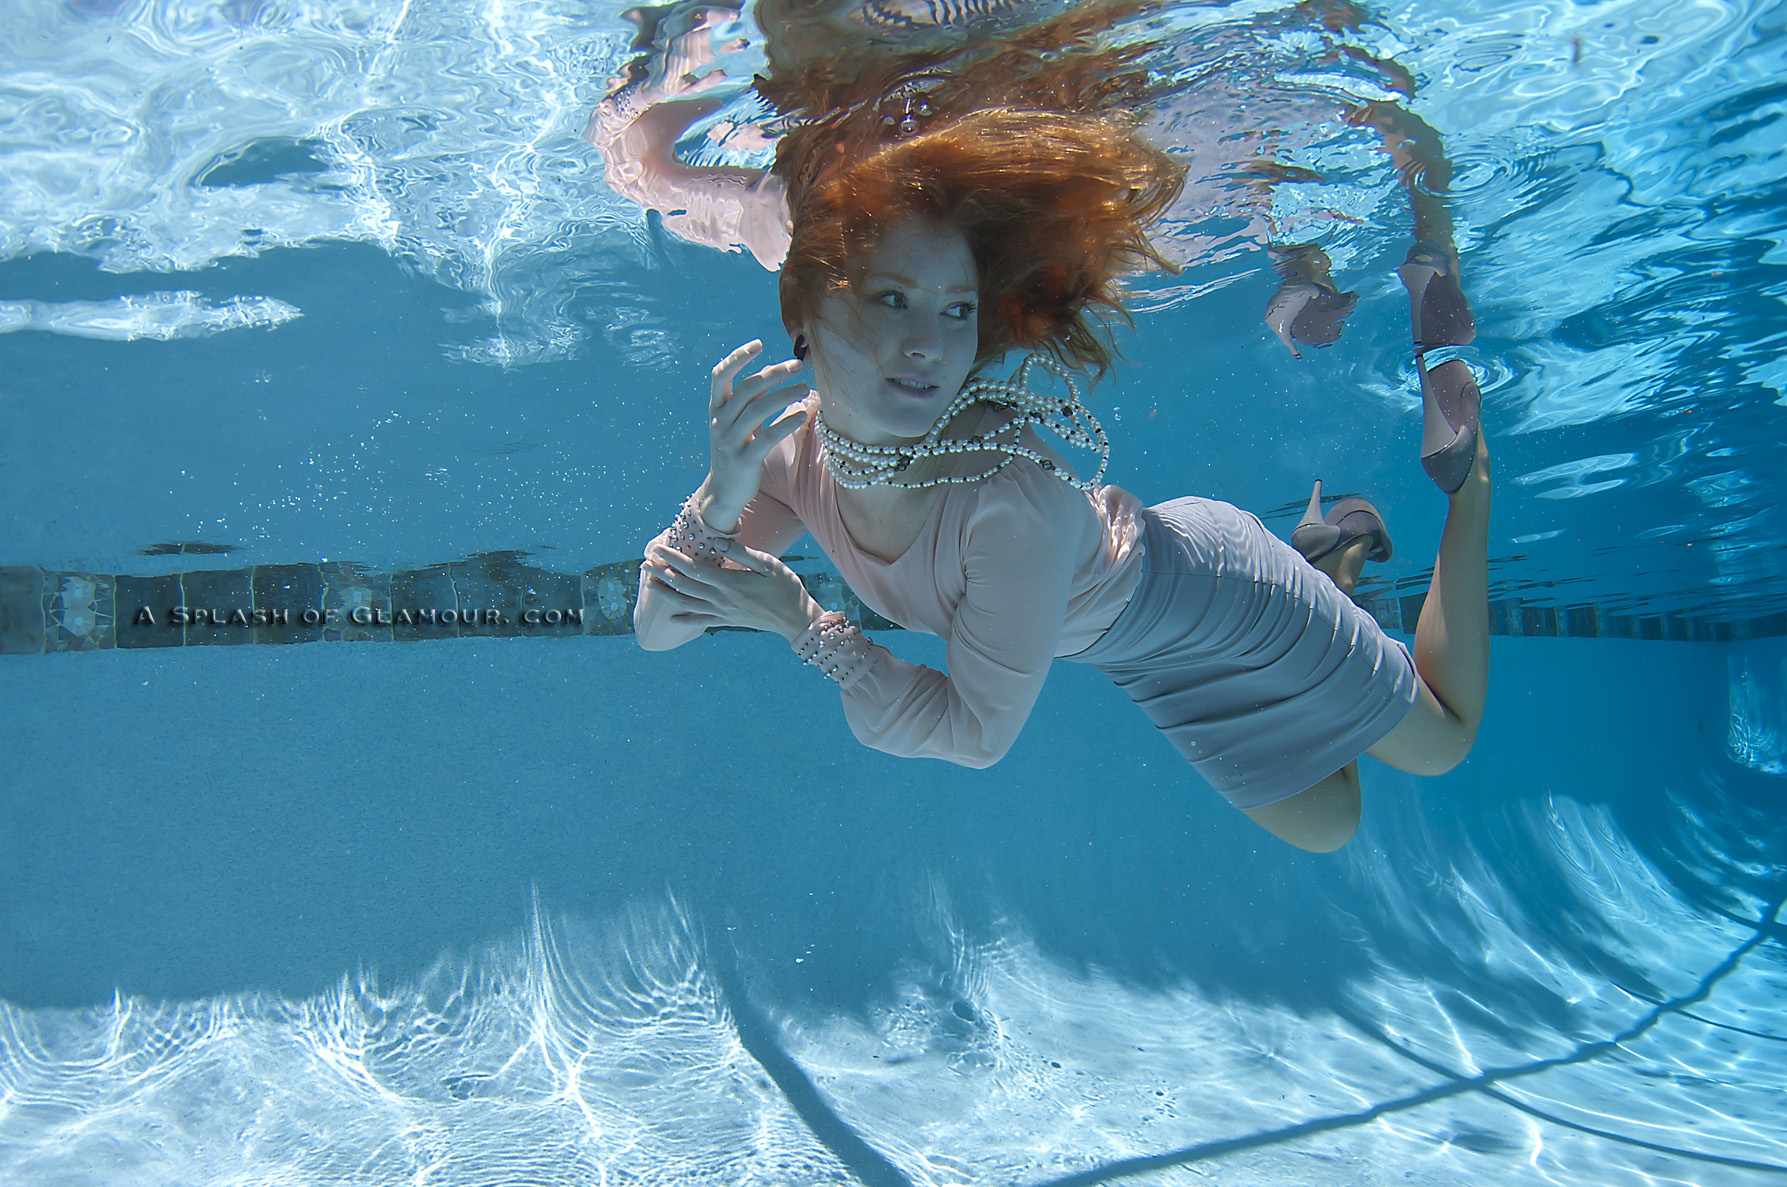 People 1787x1187 swimming pool underwater redhead floating skirt high heels model women